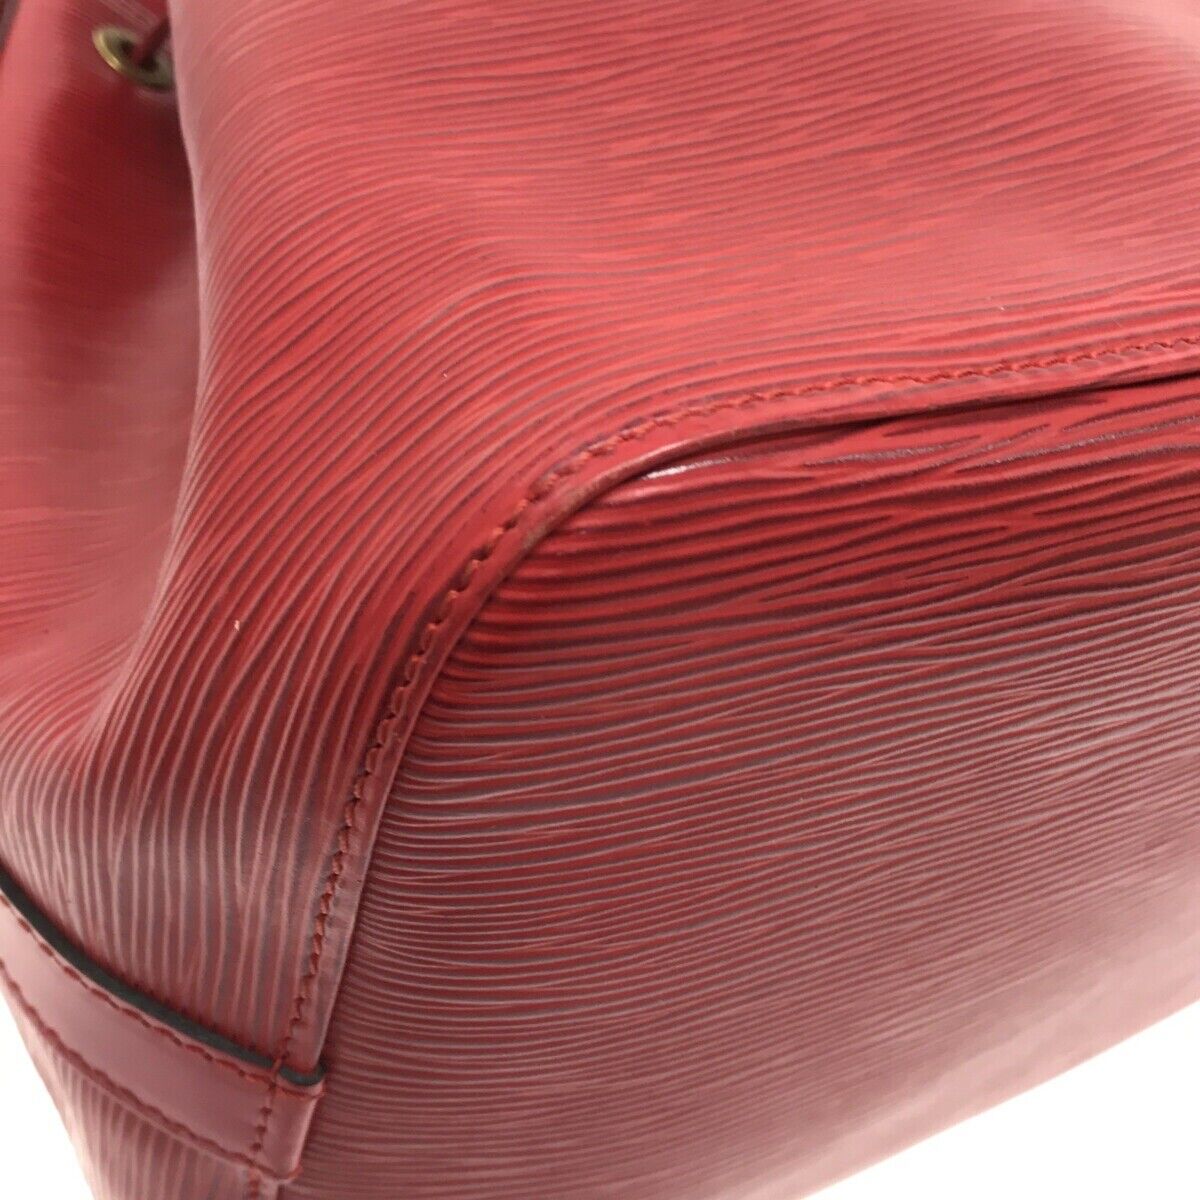 Louis Vuitton Epi Castillian Red Noe Shoulder Bag – Timeless Vintage Company